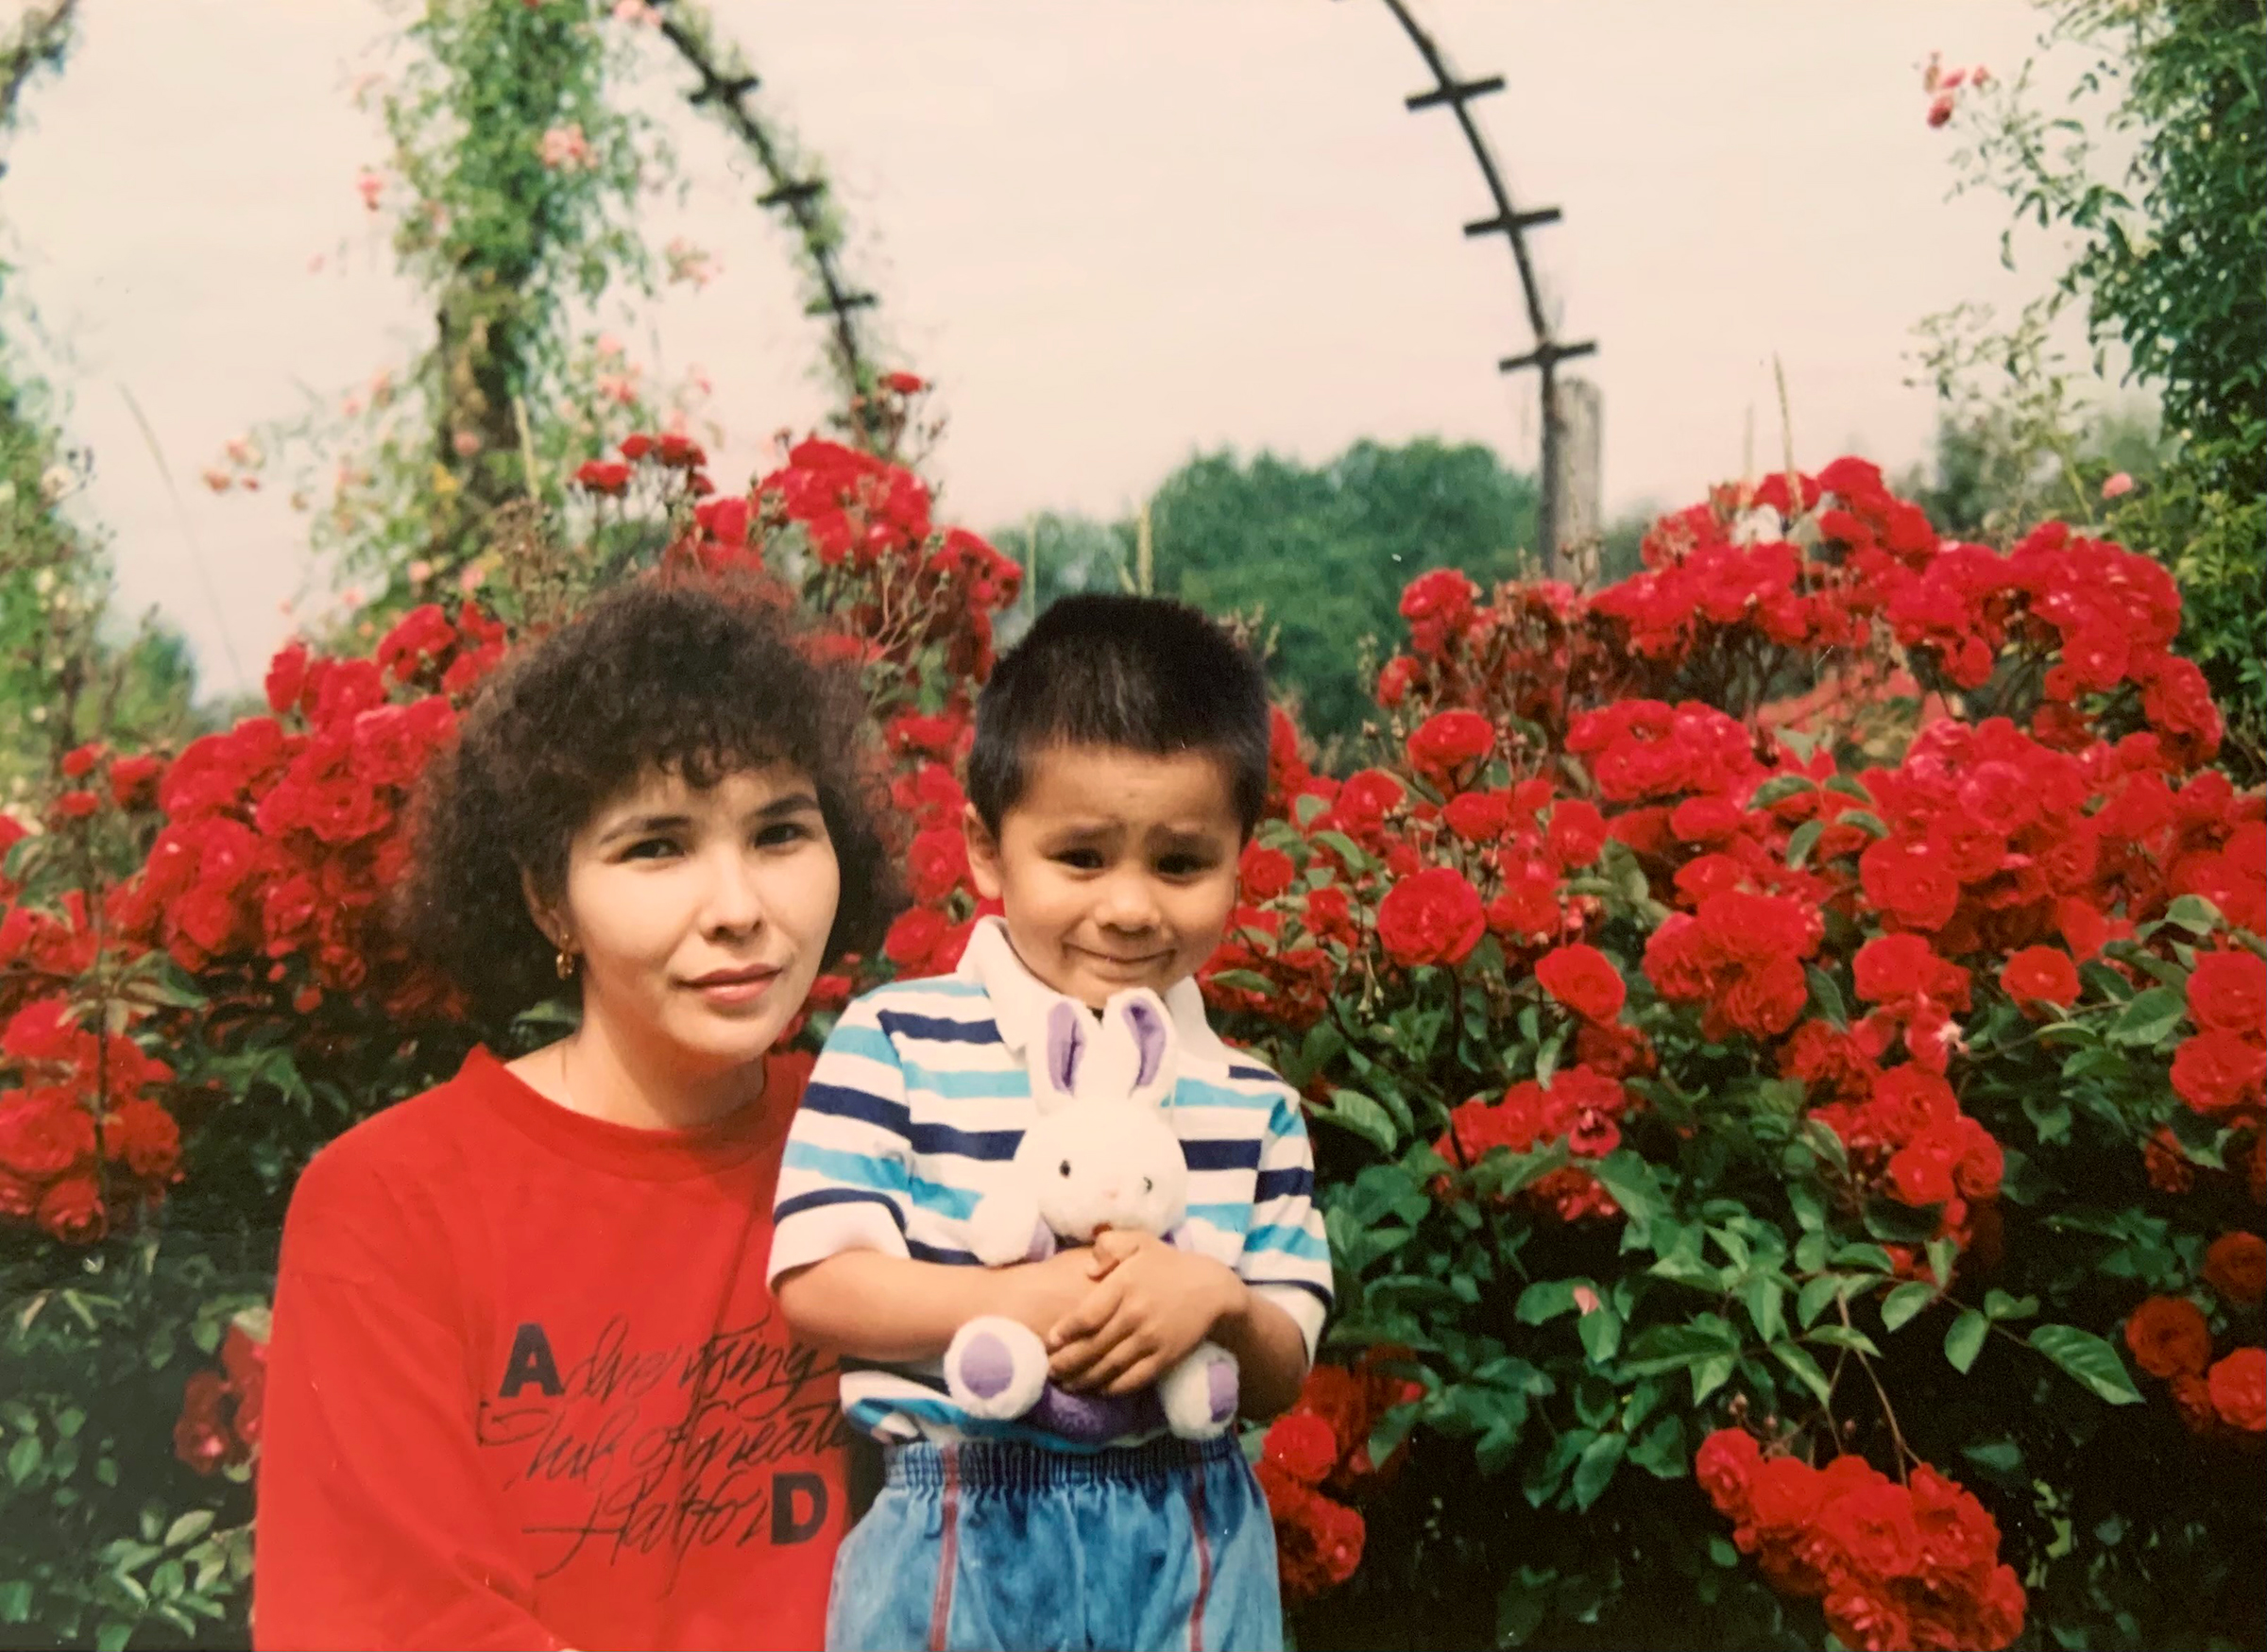 Vuong and his mother at Elizabeth Park in Hartford, Conn., circa 1992 (Courtesy of Ocean Vuong)